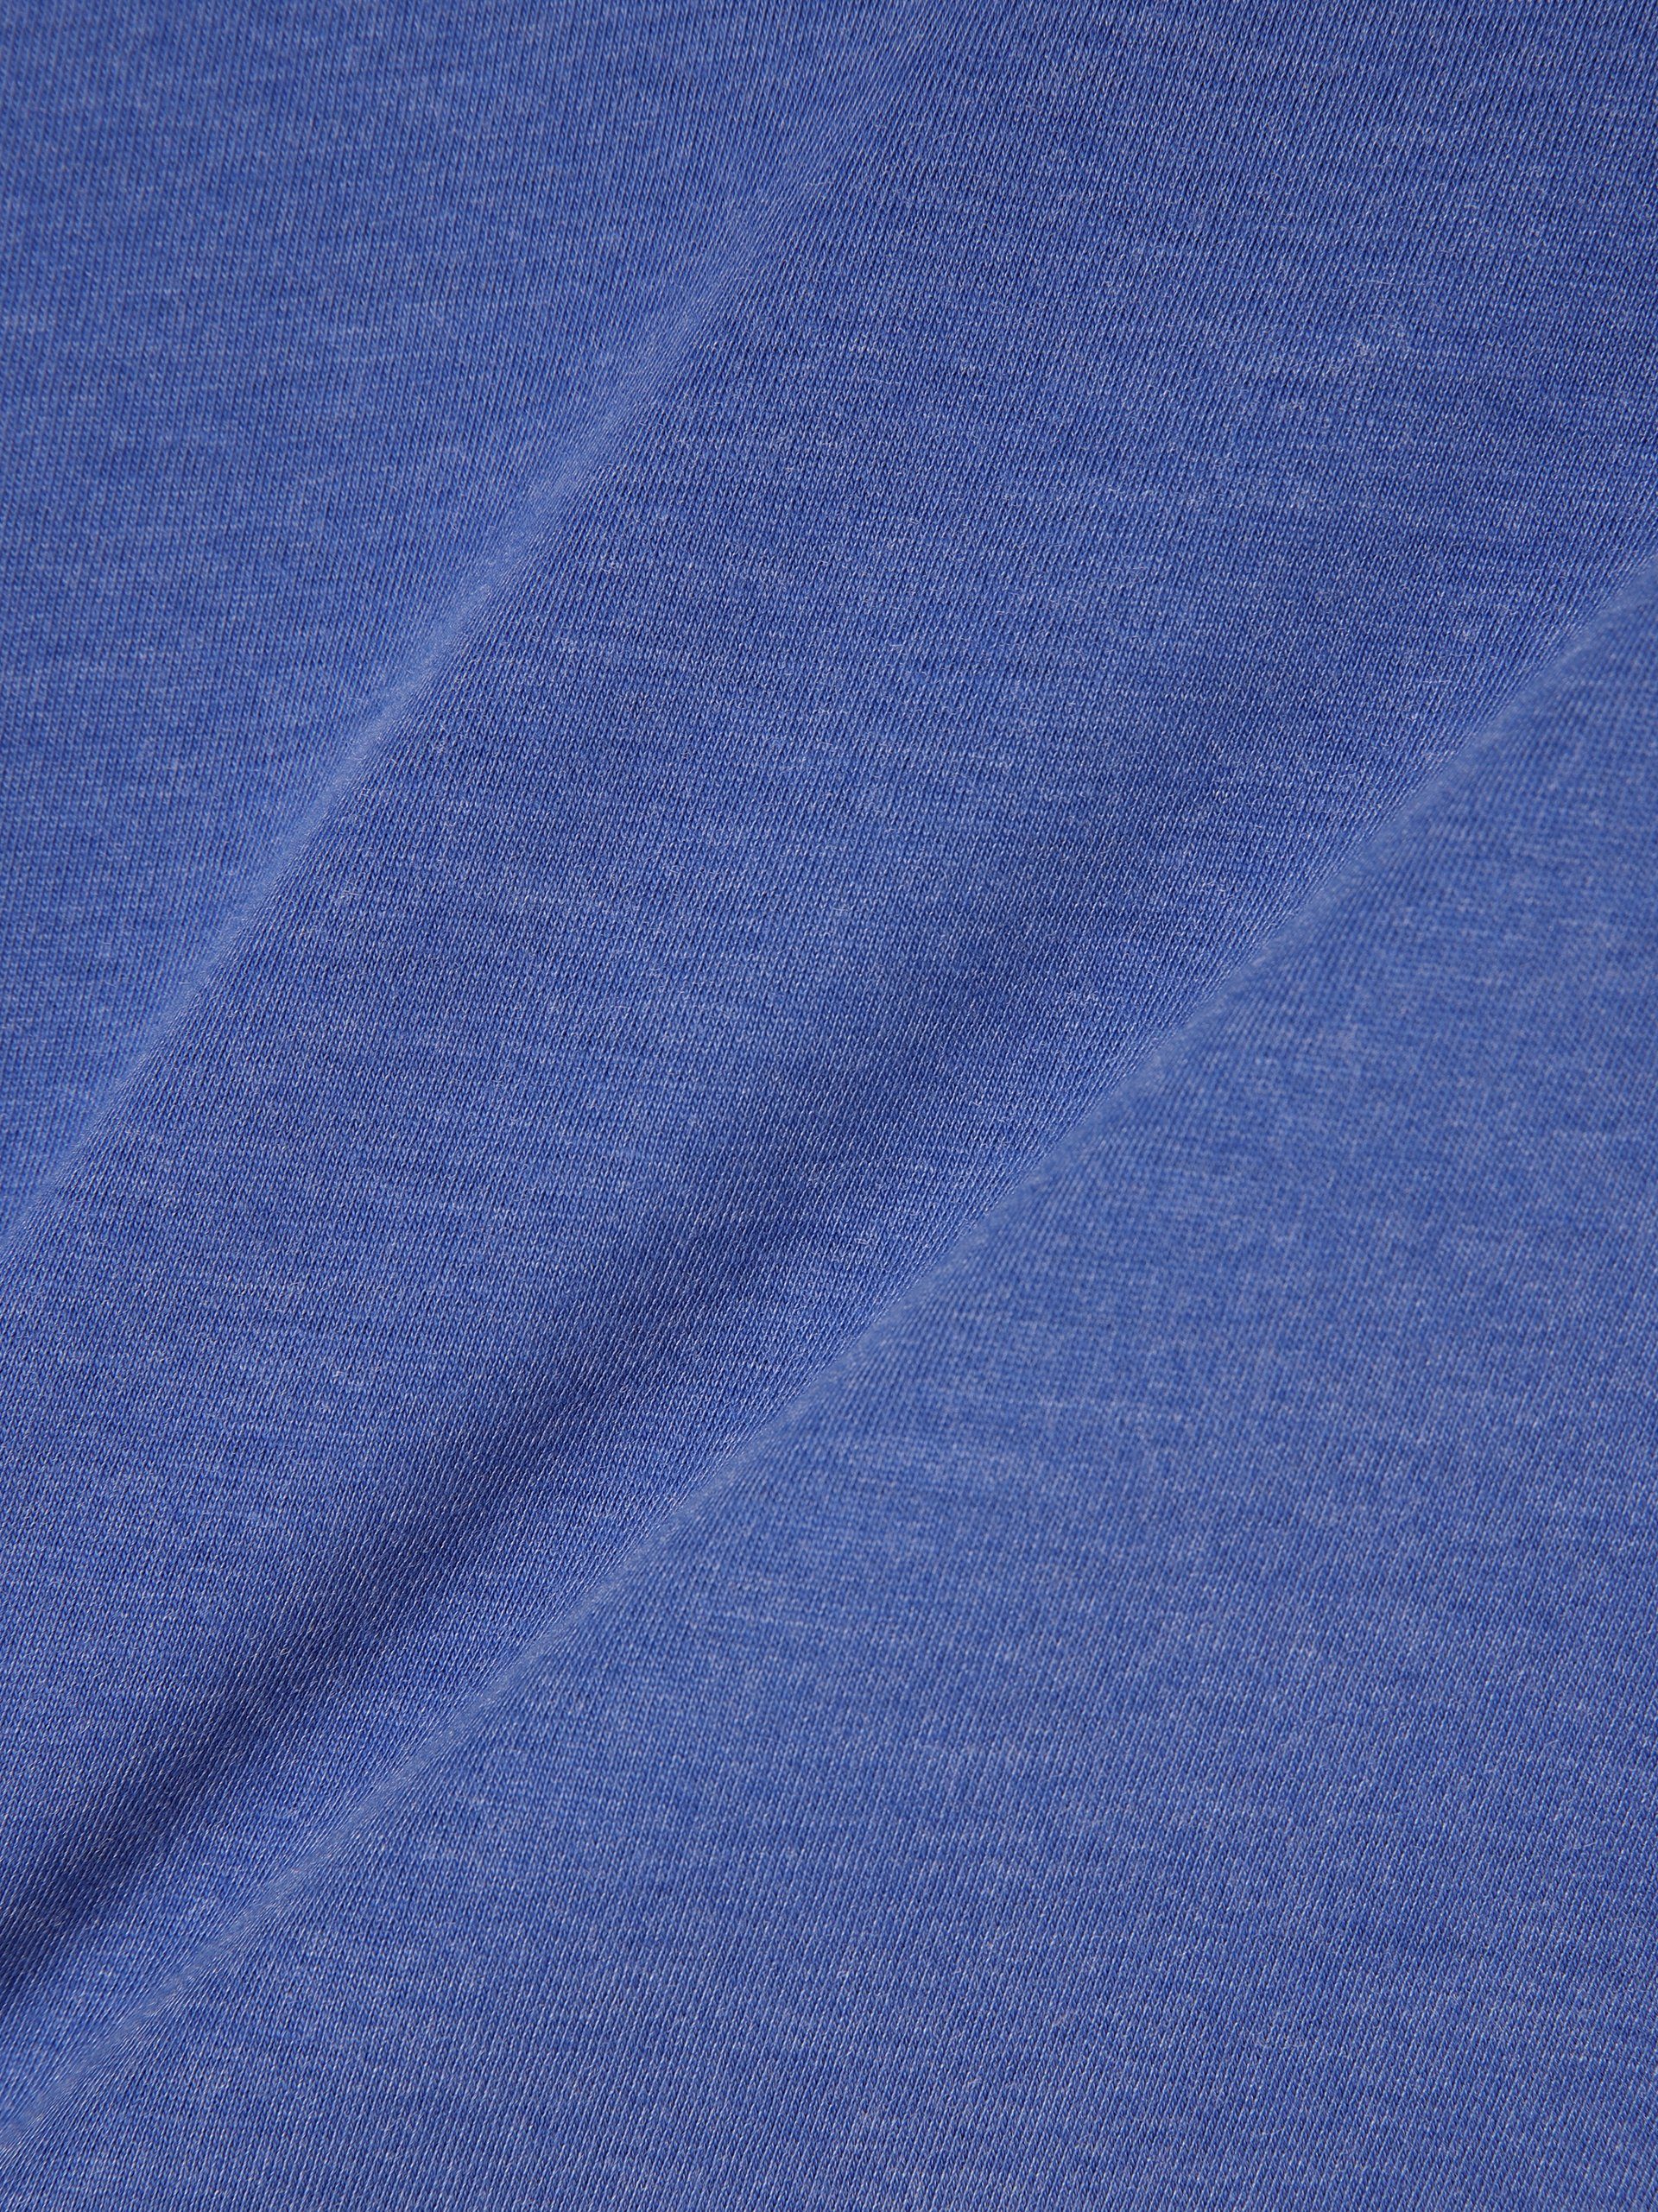 Sundström blau T-Shirt Nils